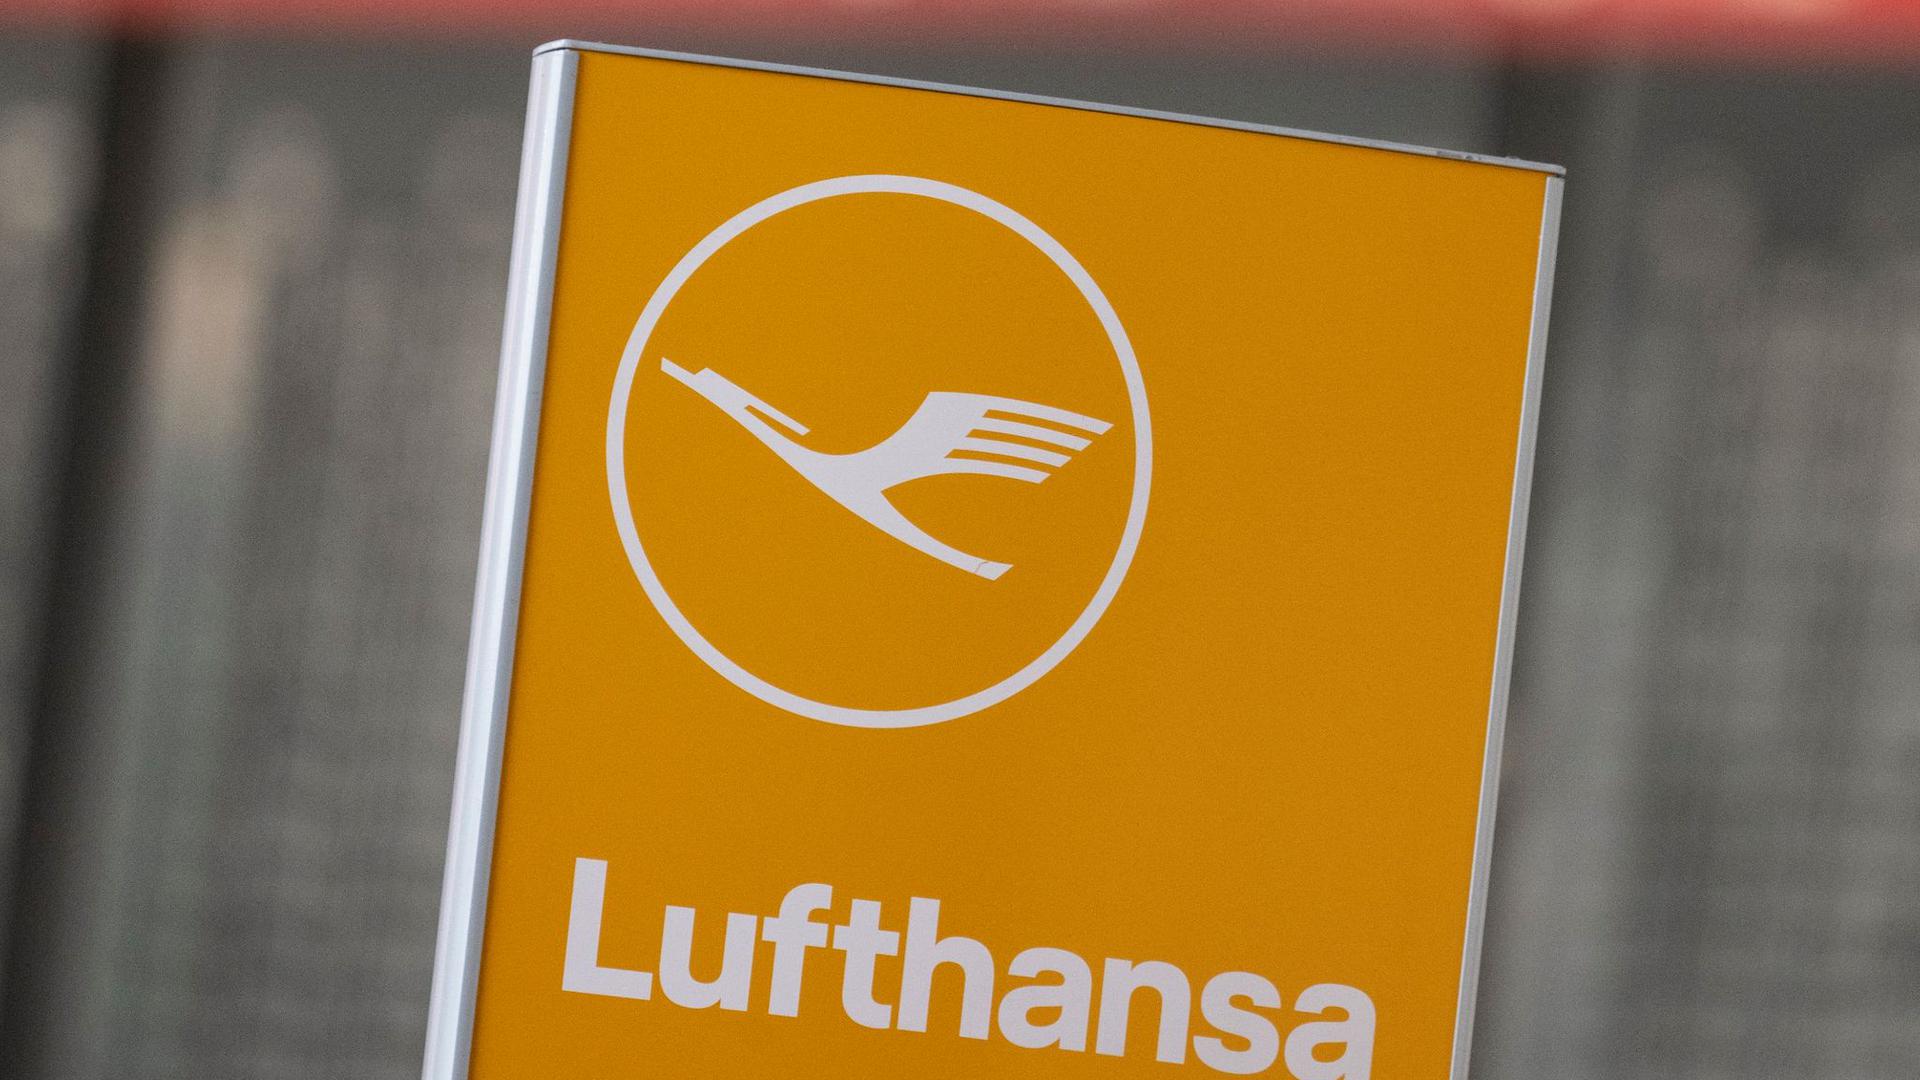 Der Weg zur vollständigen Übernahme von Ita Airways durch die Lufthansa ist laut Konzernchef Spohr klar vereinbart.